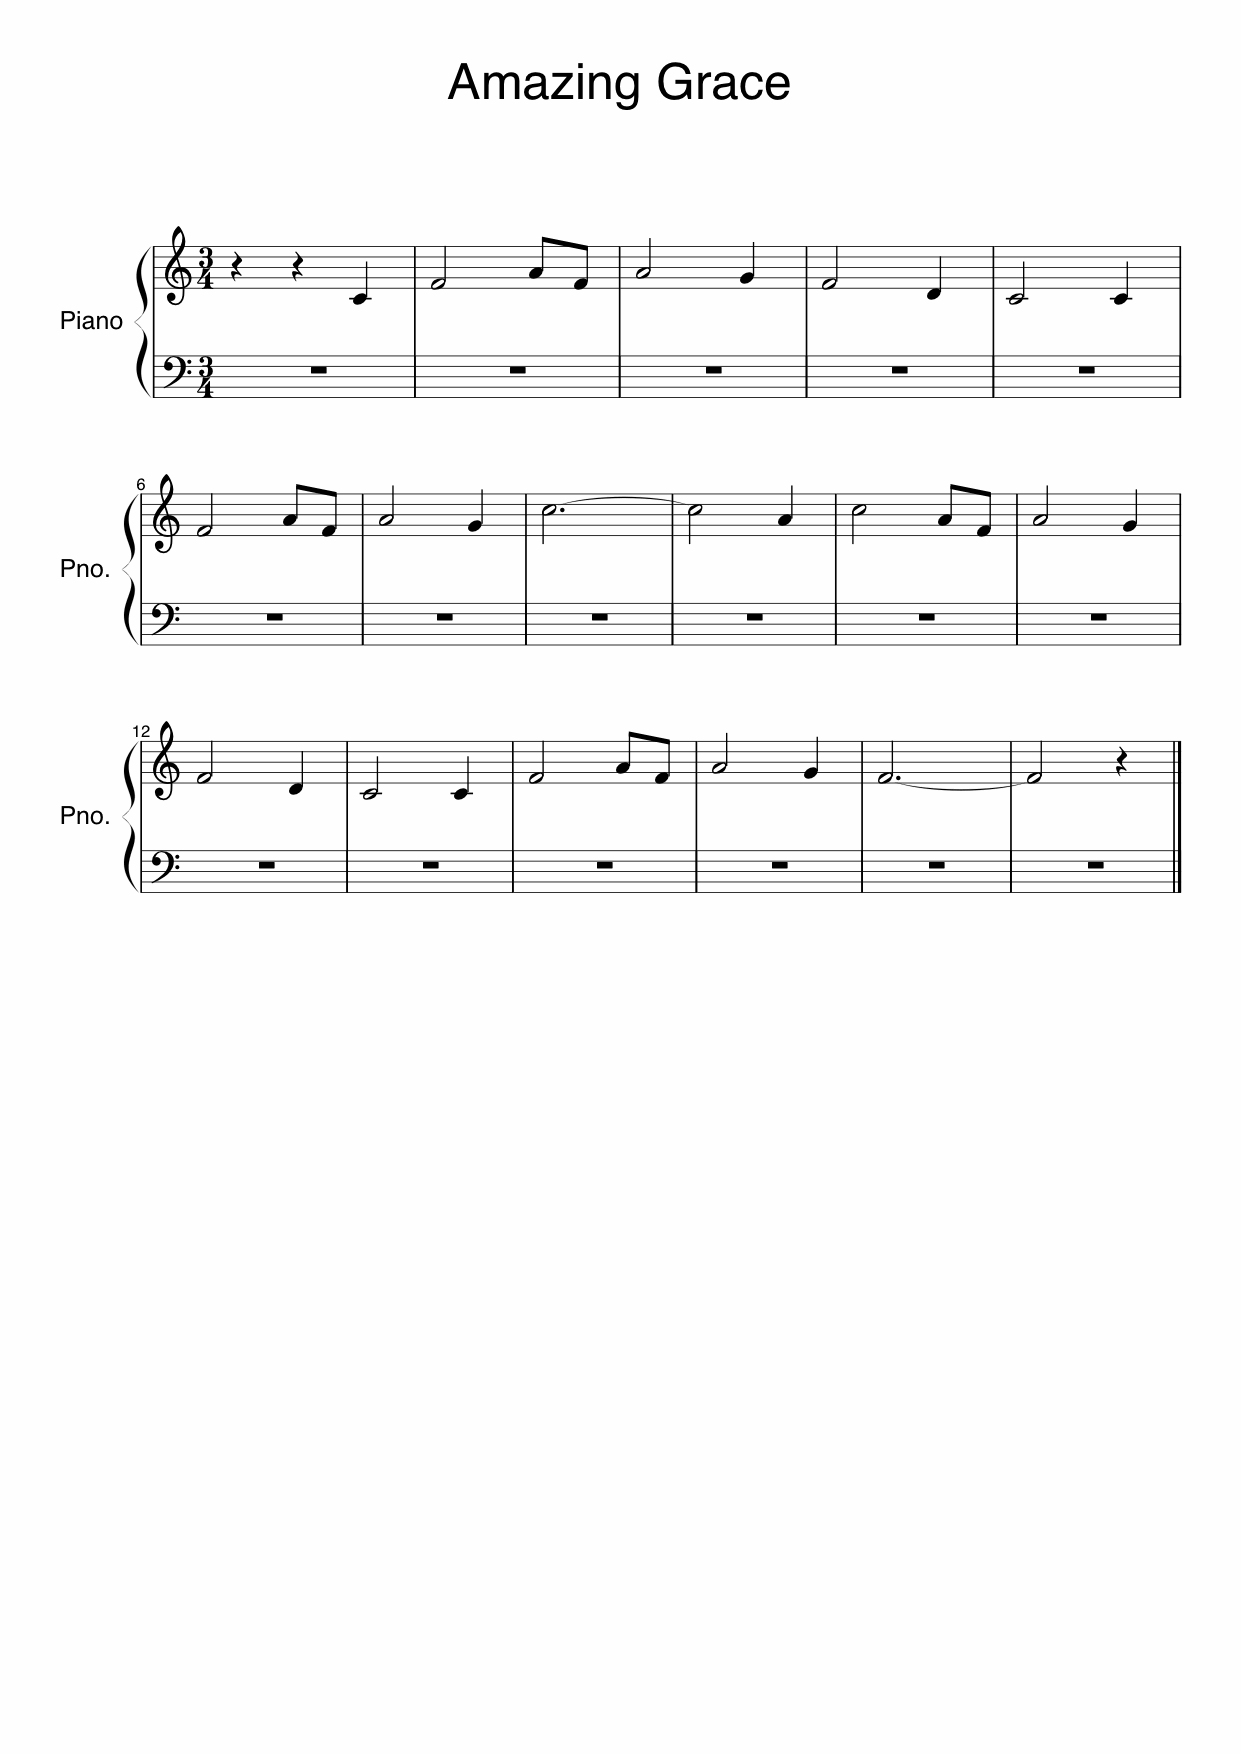 Amazing Grace sheet music melody score